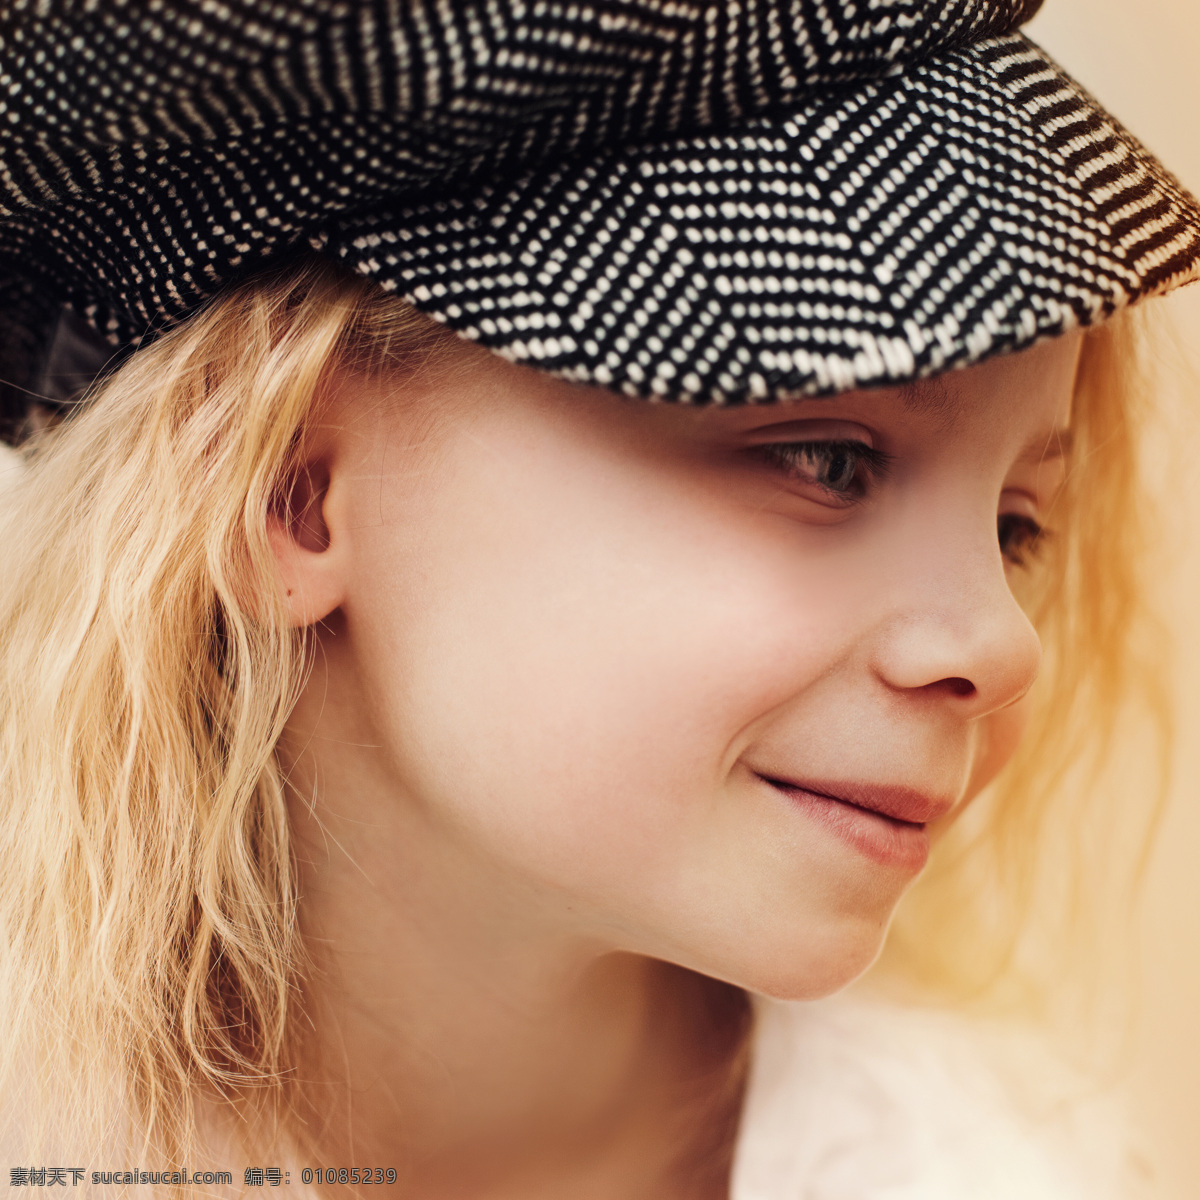 戴帽子 黄发 女孩 戴帽子的人 黄发女孩 微笑 人物 儿童图片 人物图片